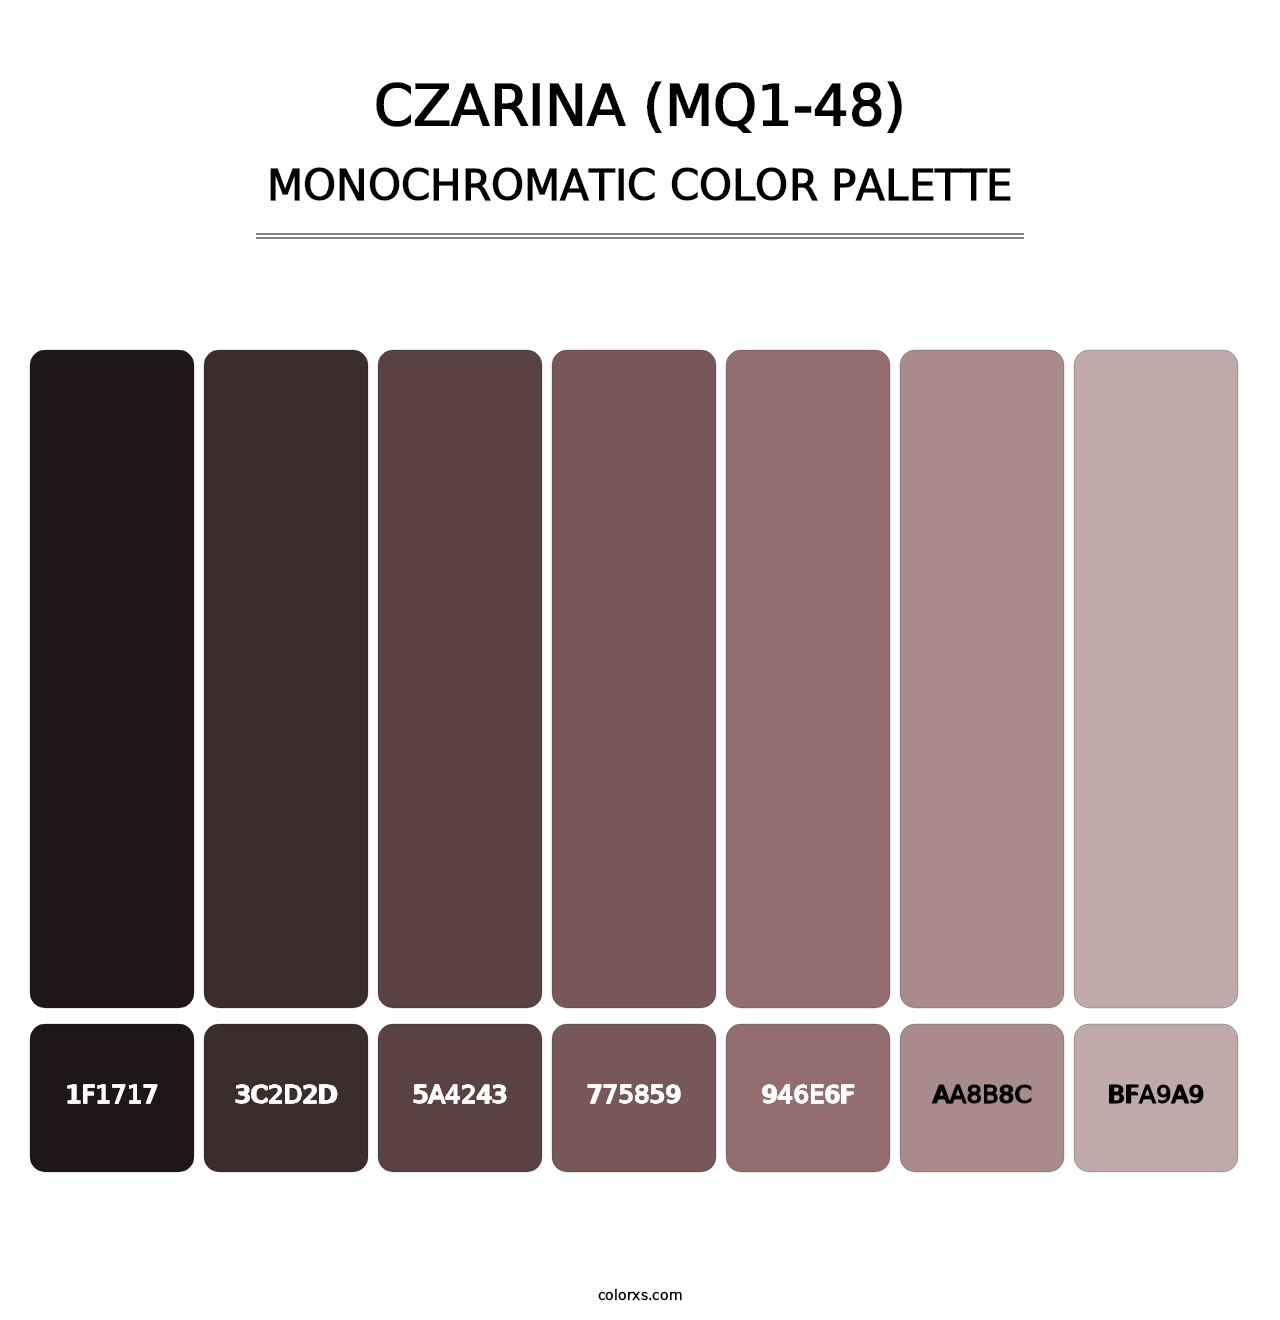 Czarina (MQ1-48) - Monochromatic Color Palette